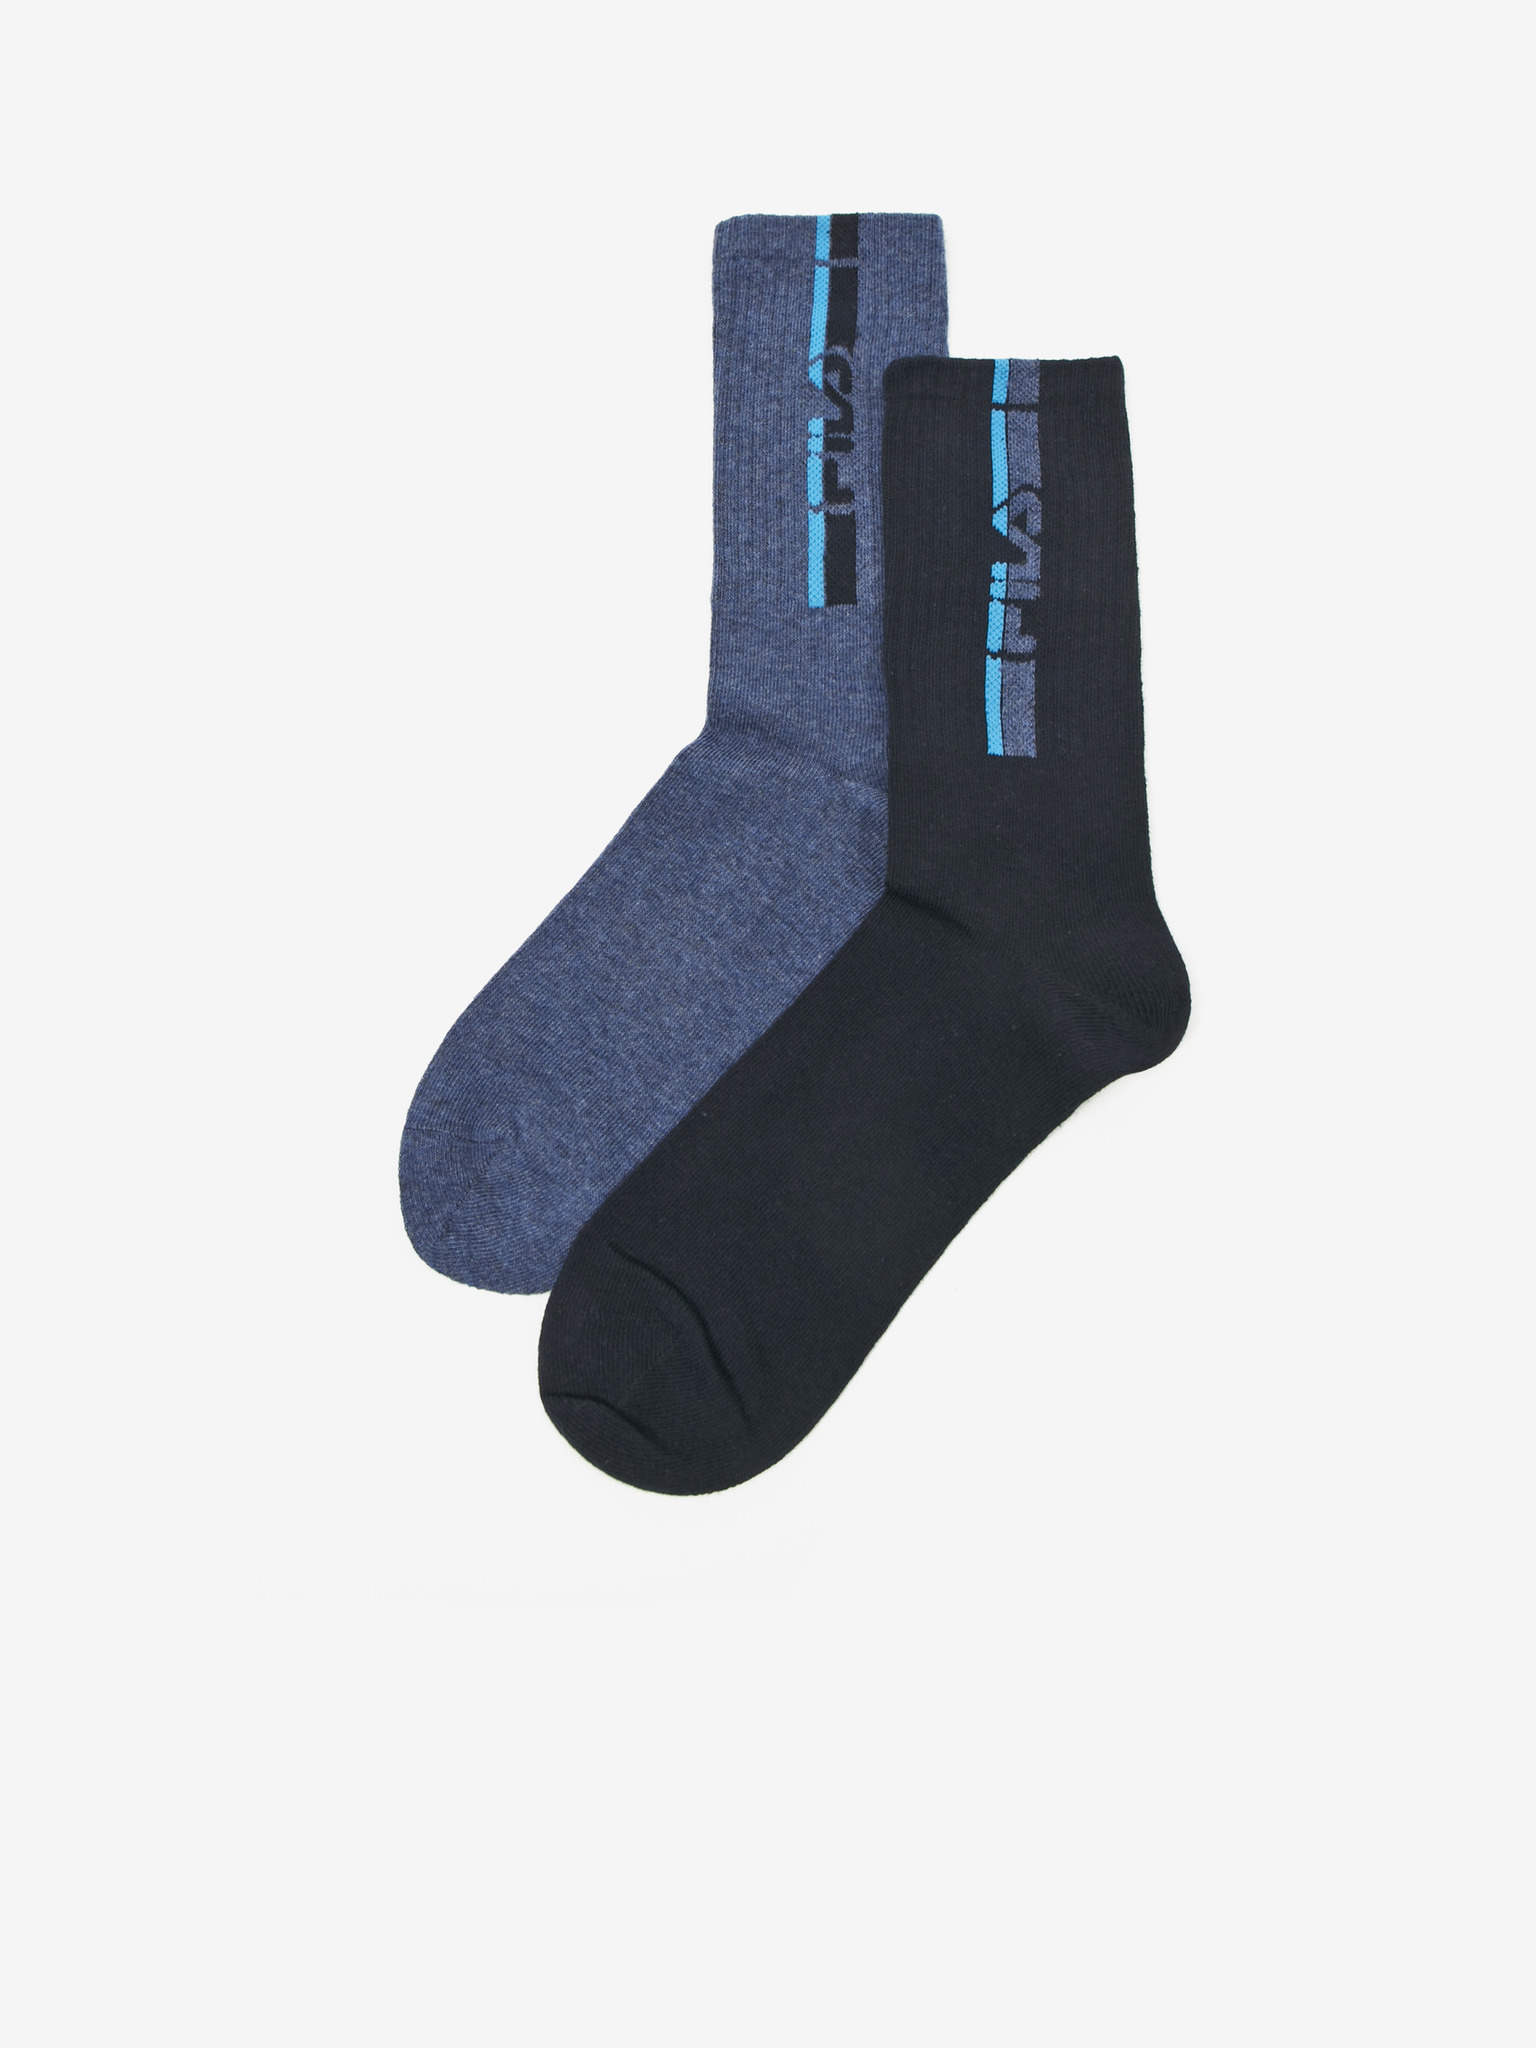 Ponožky 2 páry FILA